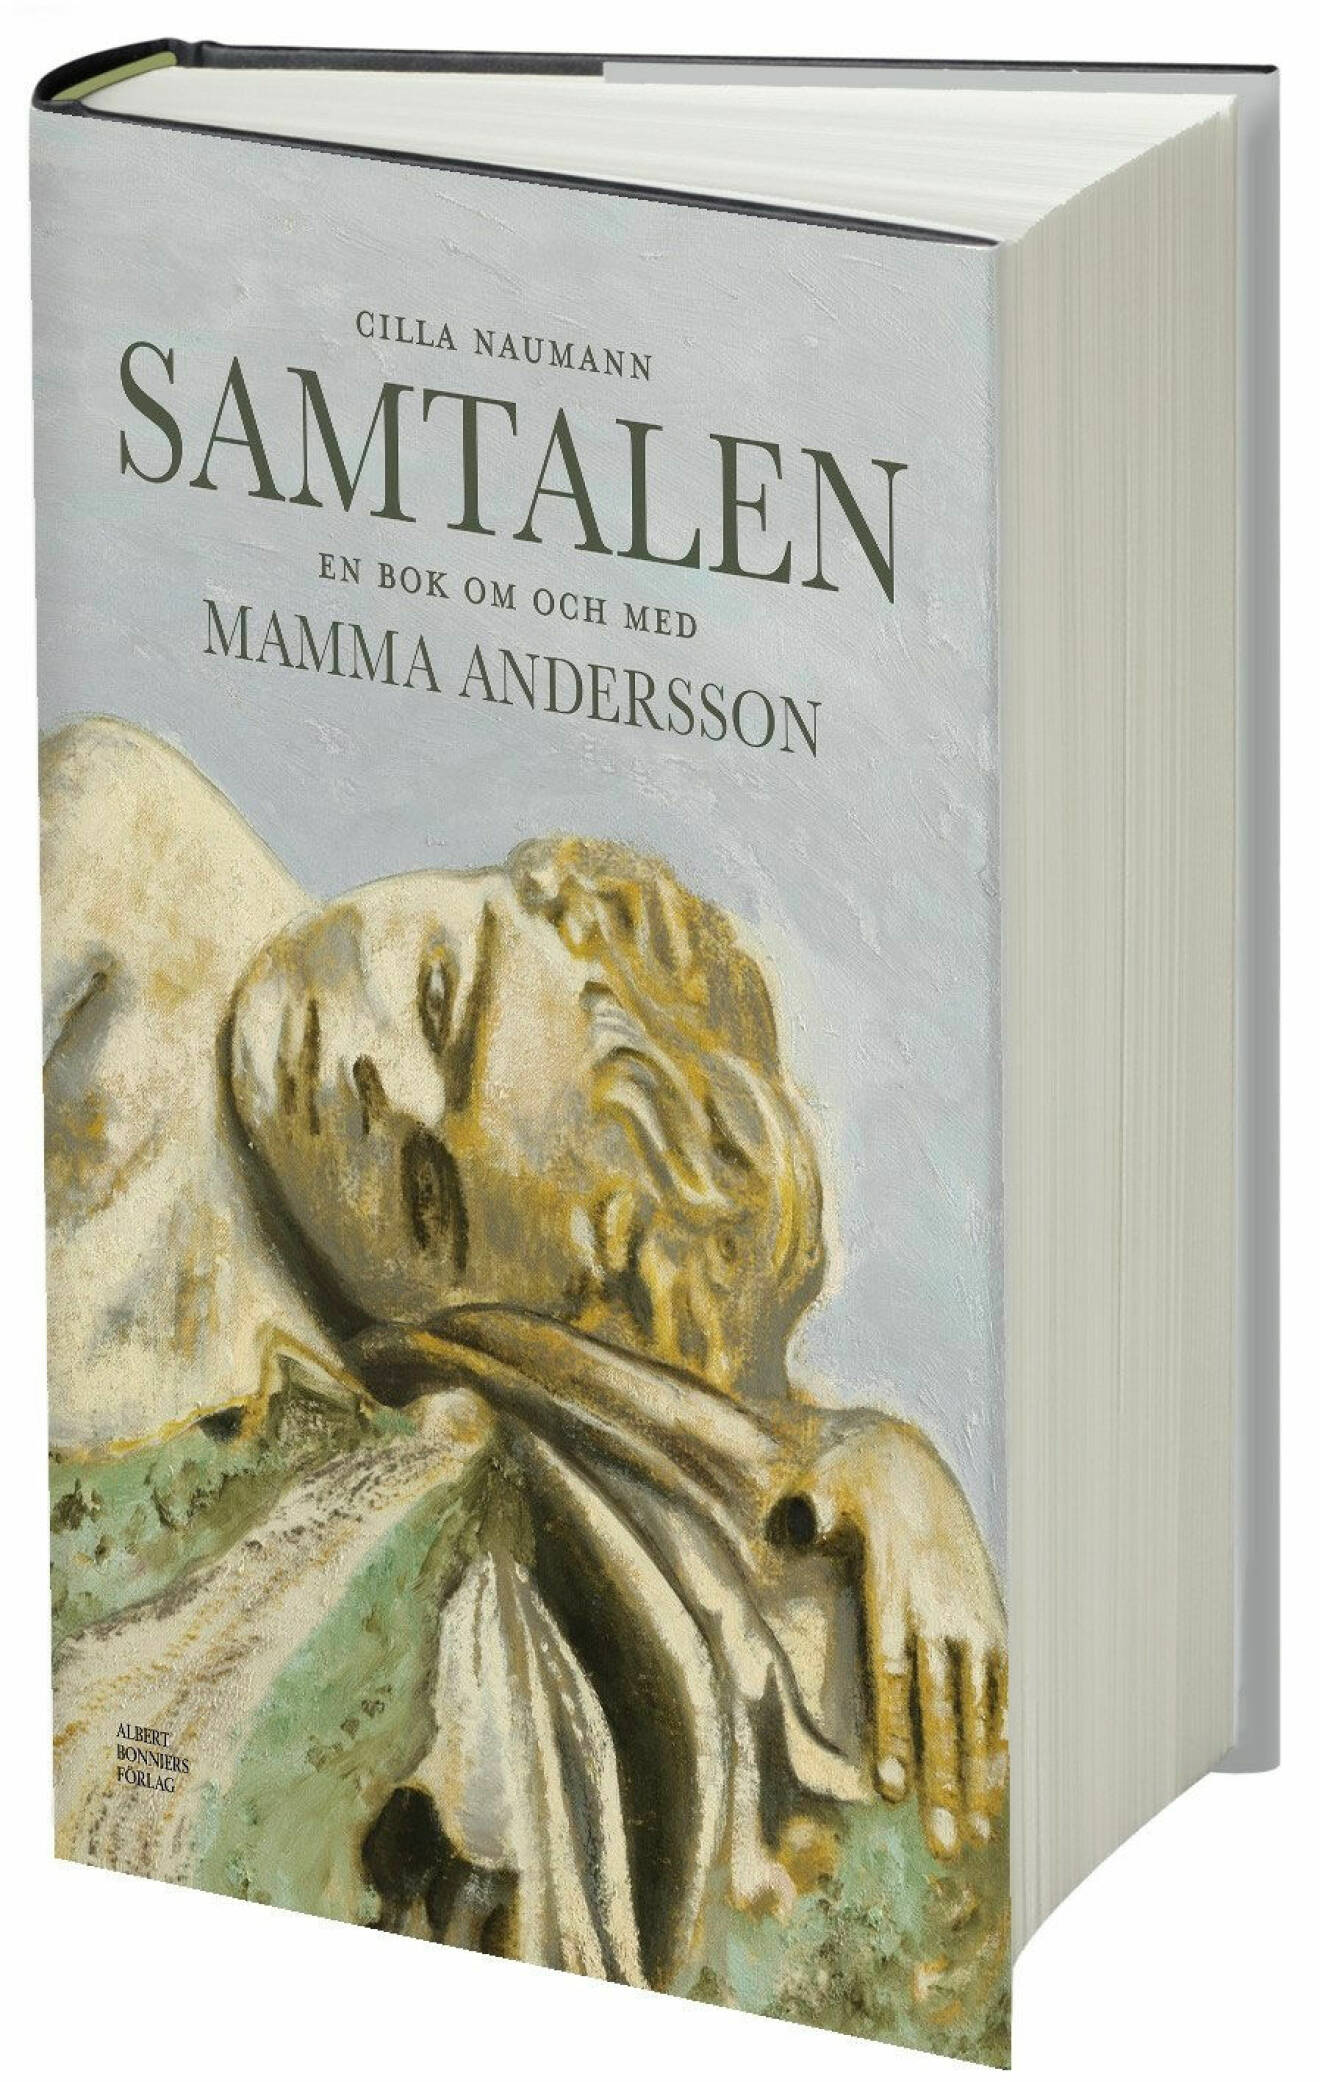 Samtalen en bok om och med Karin Mamma Andersson av Cilla Nauman (Albert Bonniers förlag).